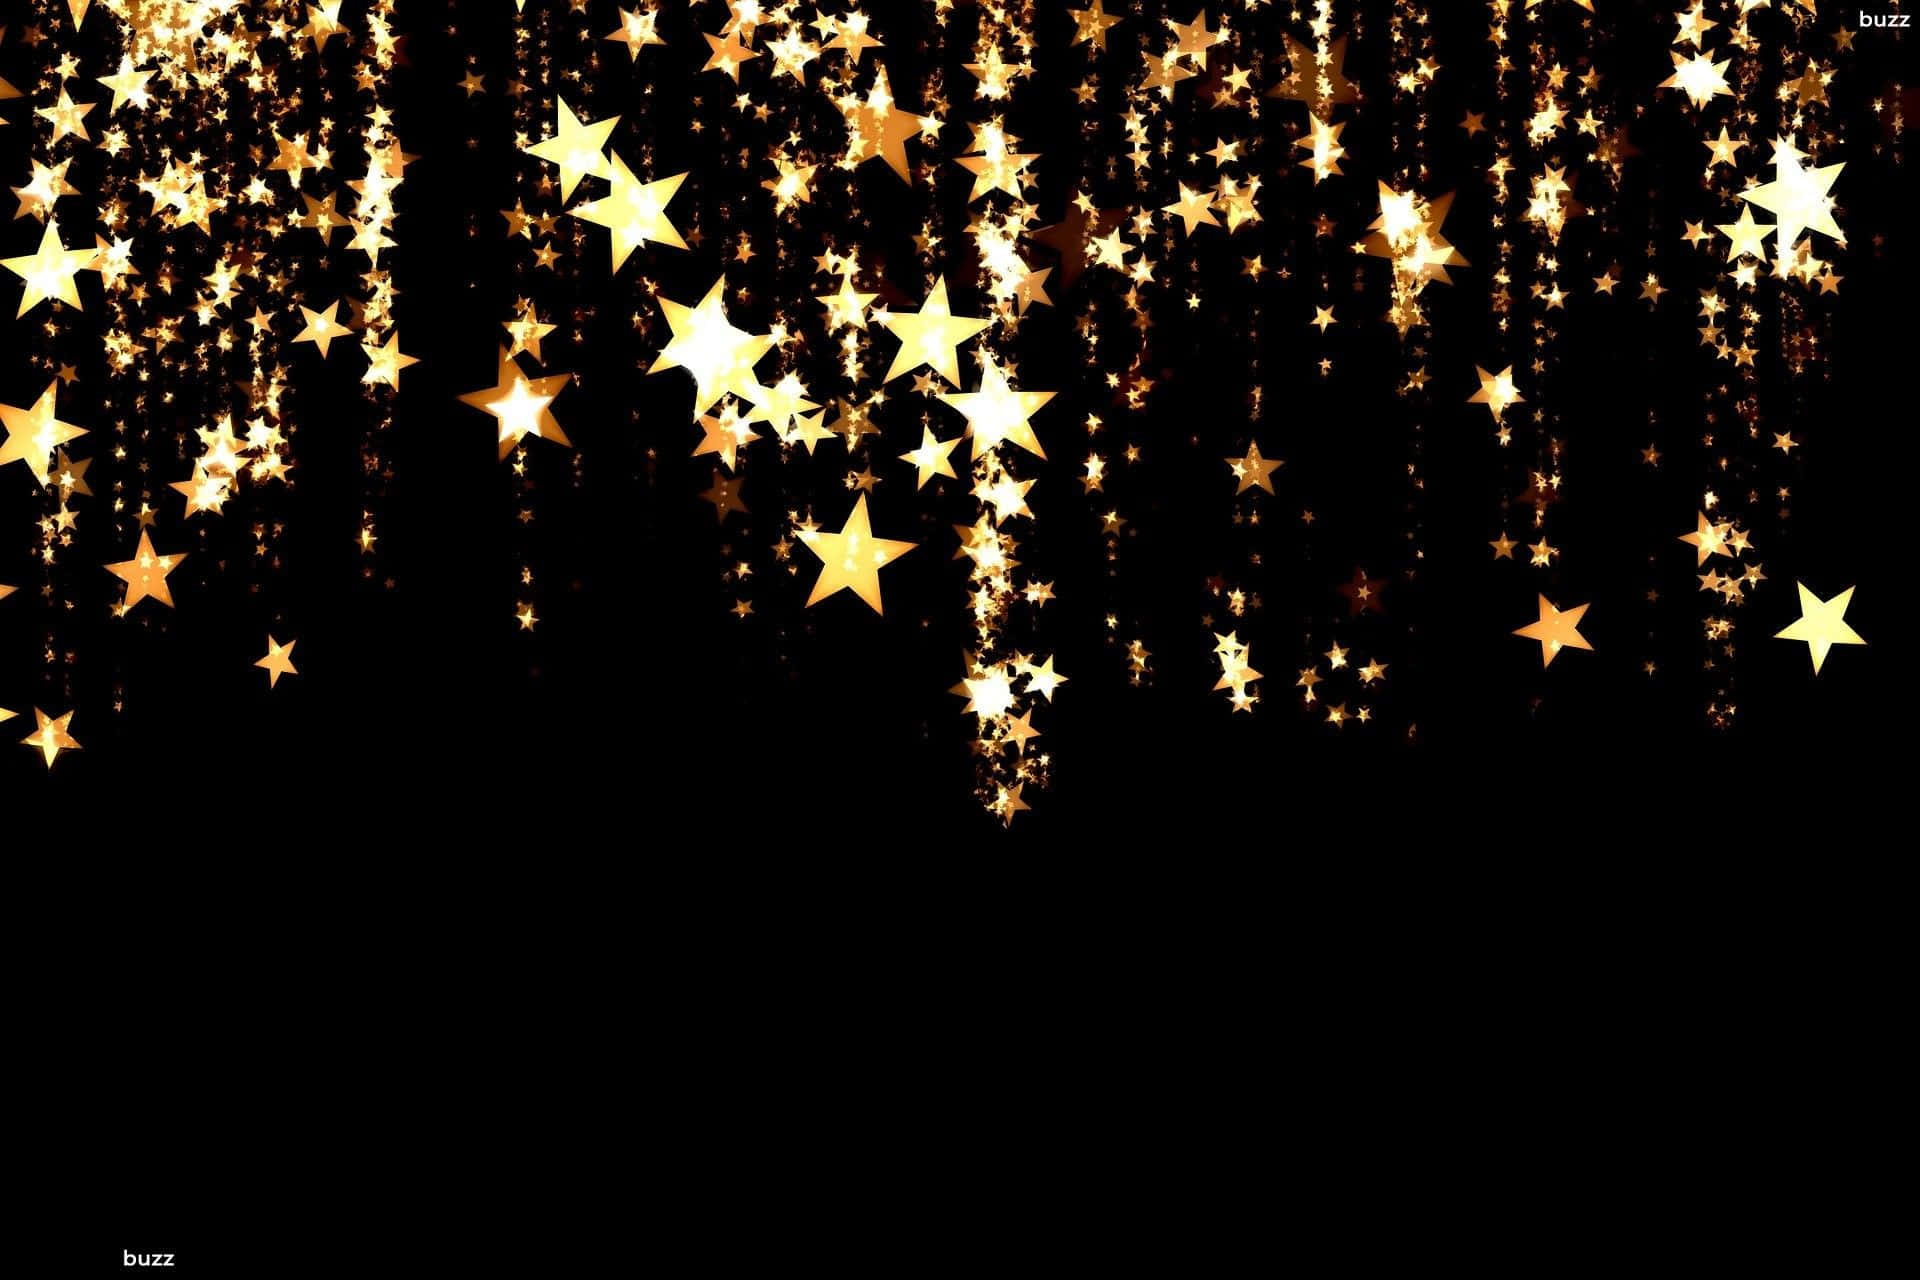 Unalluvia De Estrellas Doradas Cae En Cascada A Través Del Cielo Nocturno, Brillando Intensamente En La Oscuridad. Fondo de pantalla